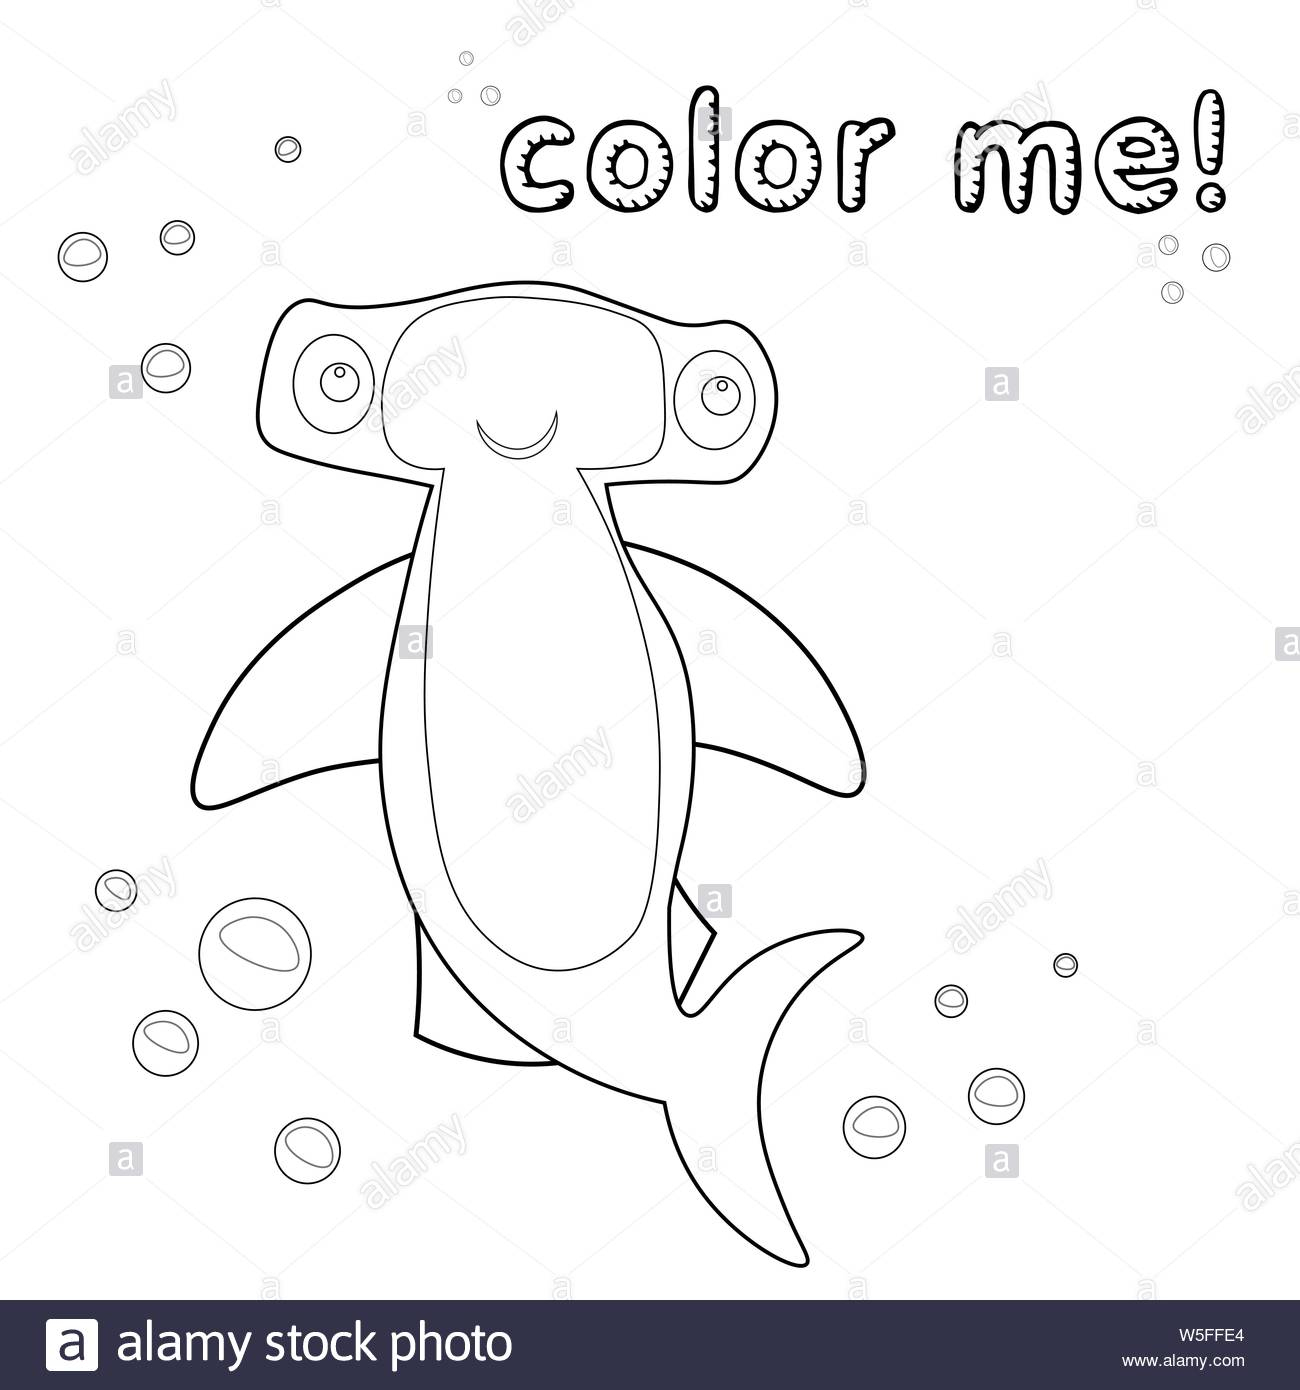 Jeu Pour Enfants. Contours Requin Marteau. Page À Colorier intérieur Personnage A Colorier